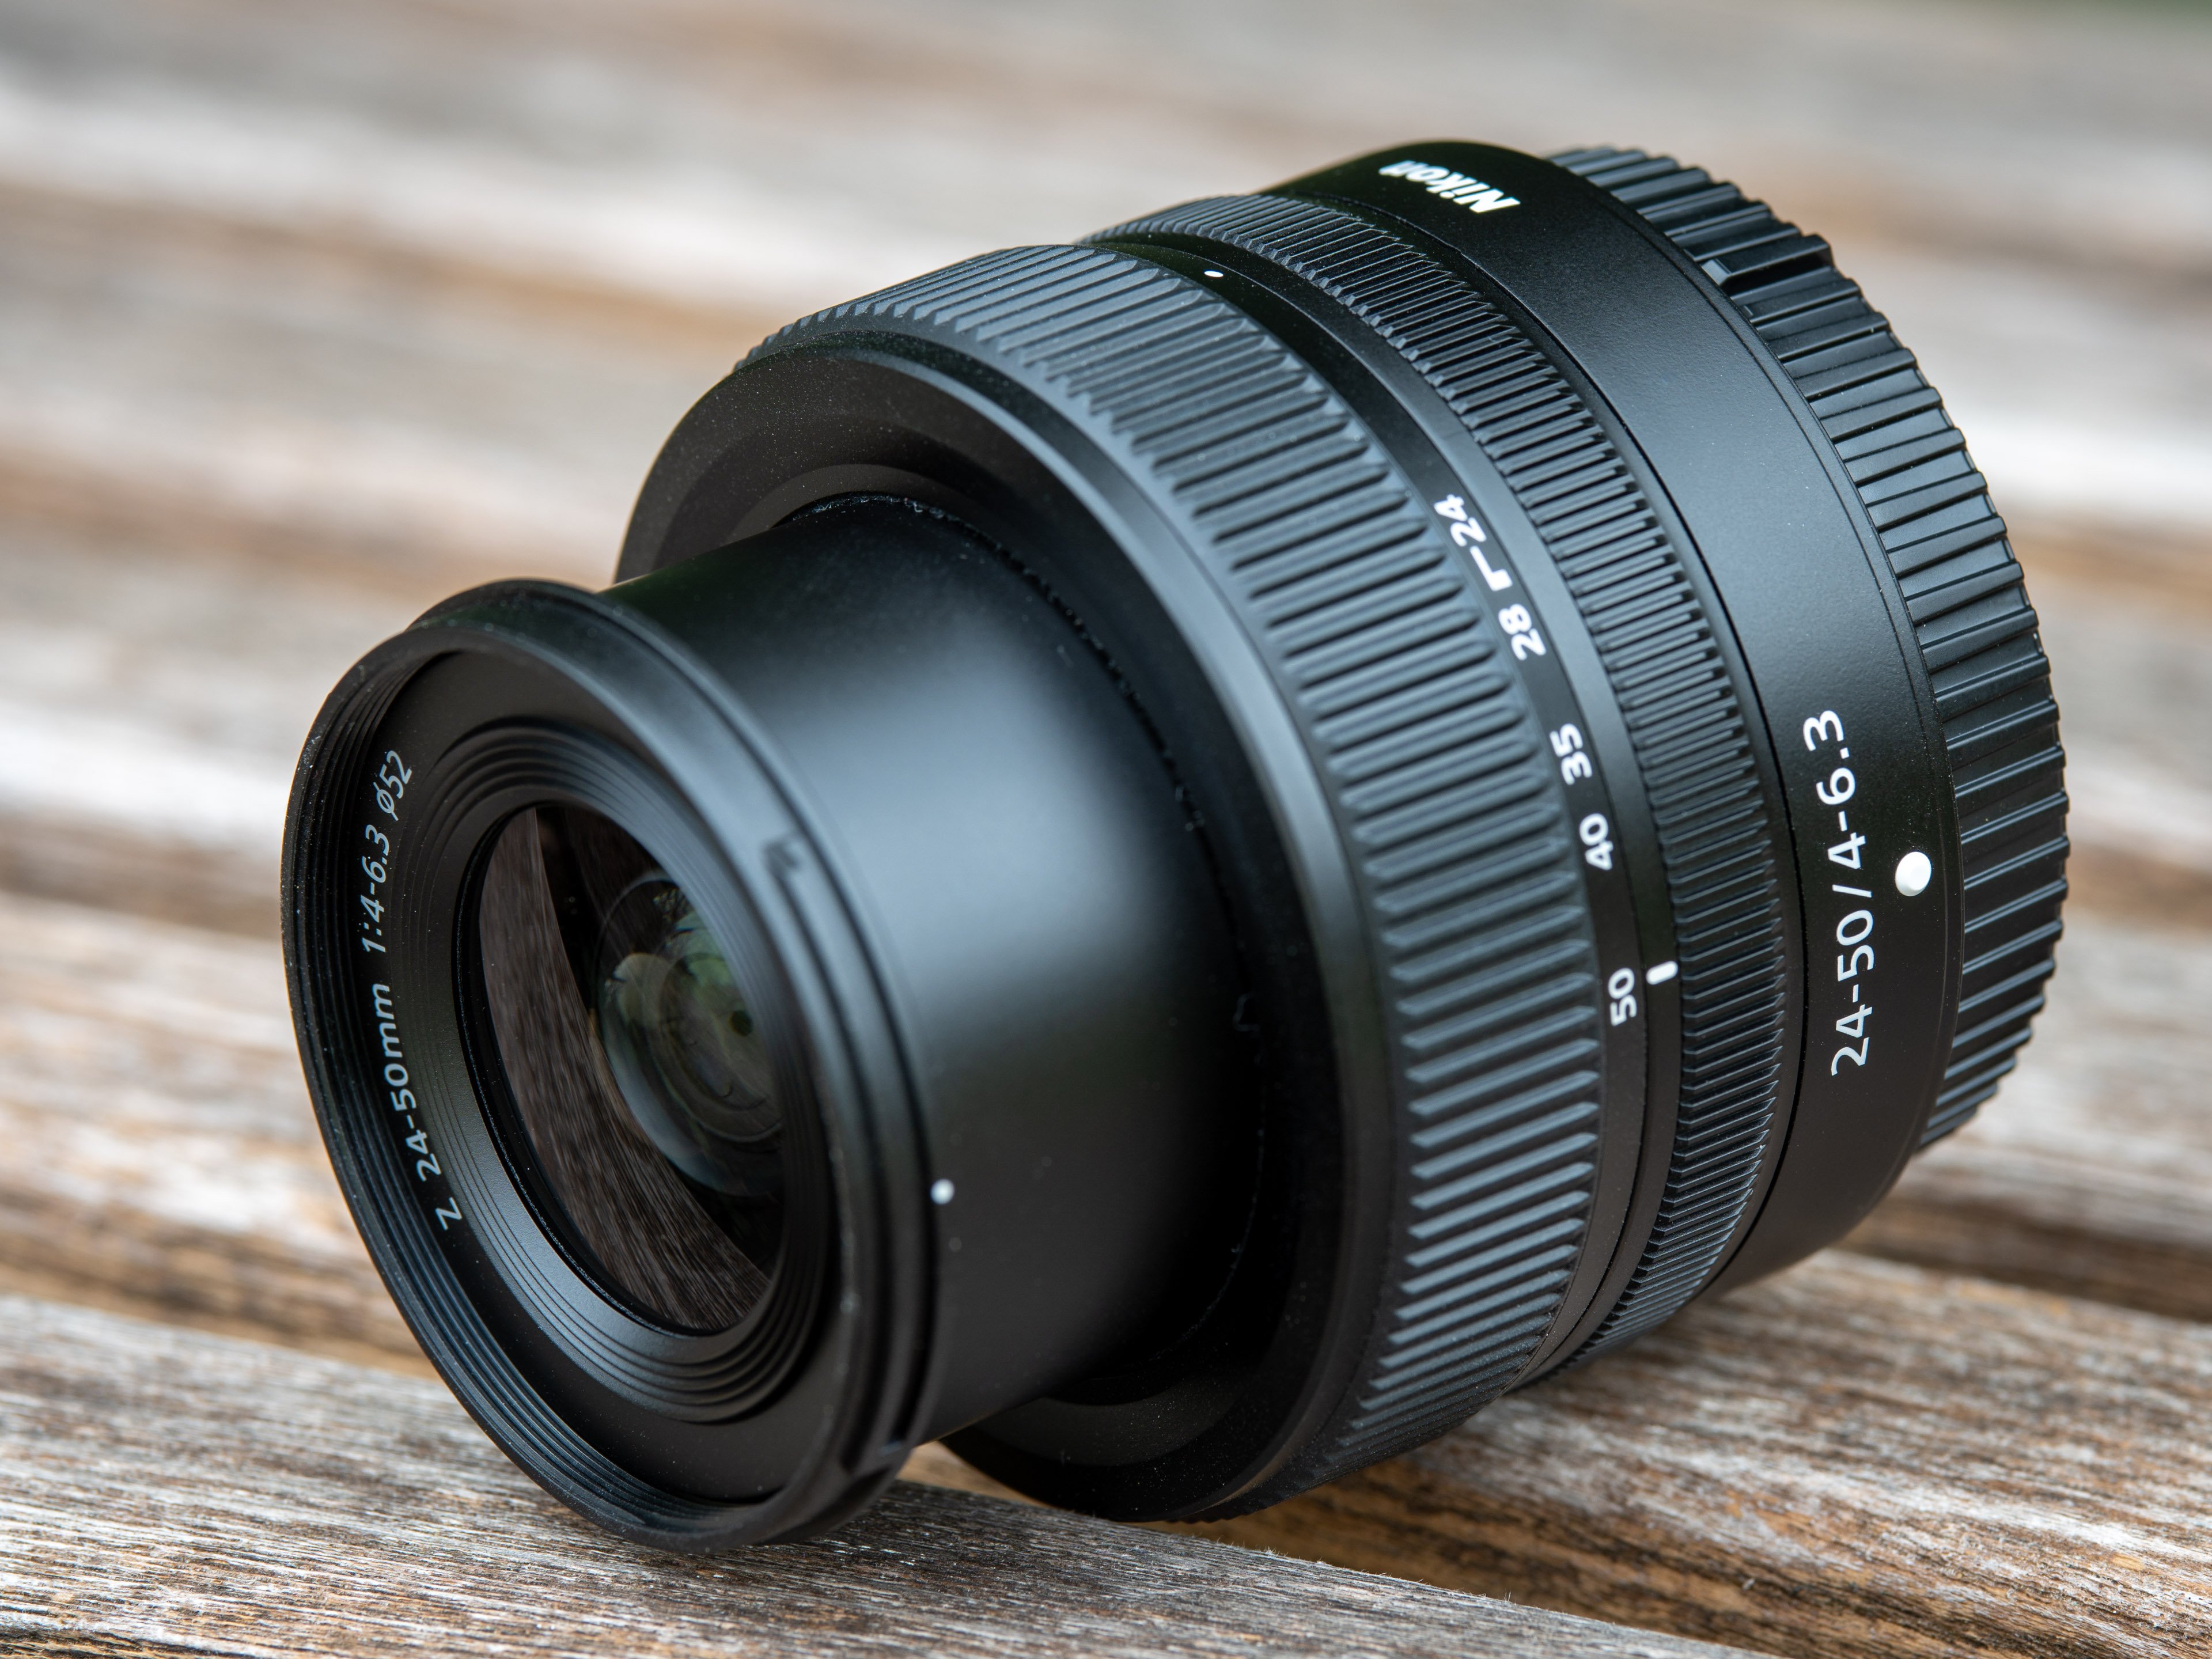 Nikon Z 24-50mm f4-6.3 review | Cameralabs